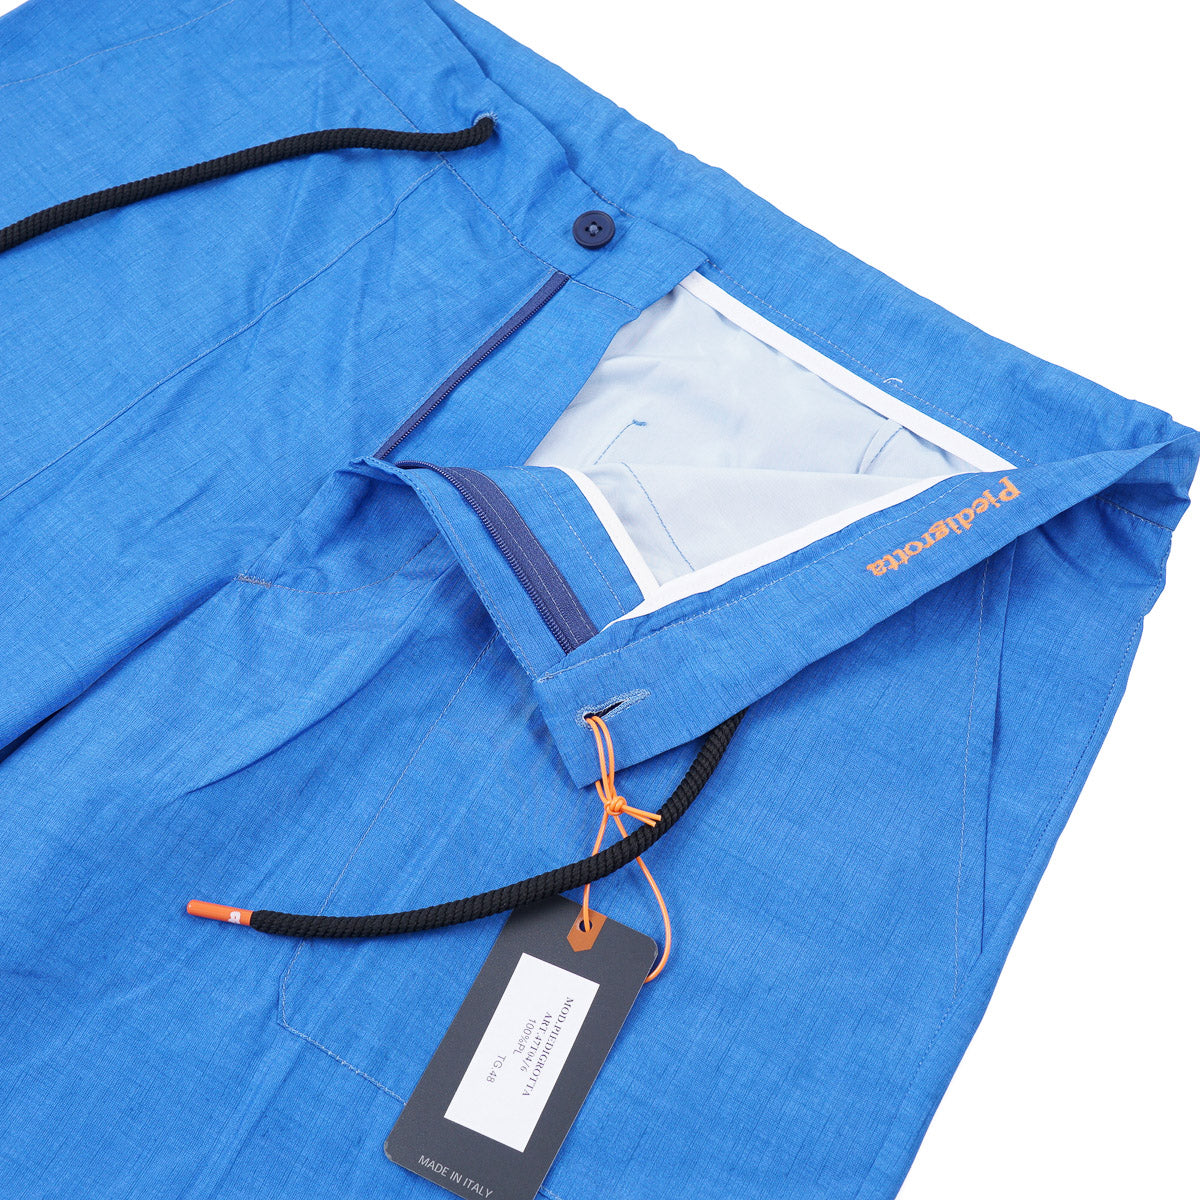 Marco Pescarolo Lightweight Tech Fabric Shorts - Top Shelf Apparel